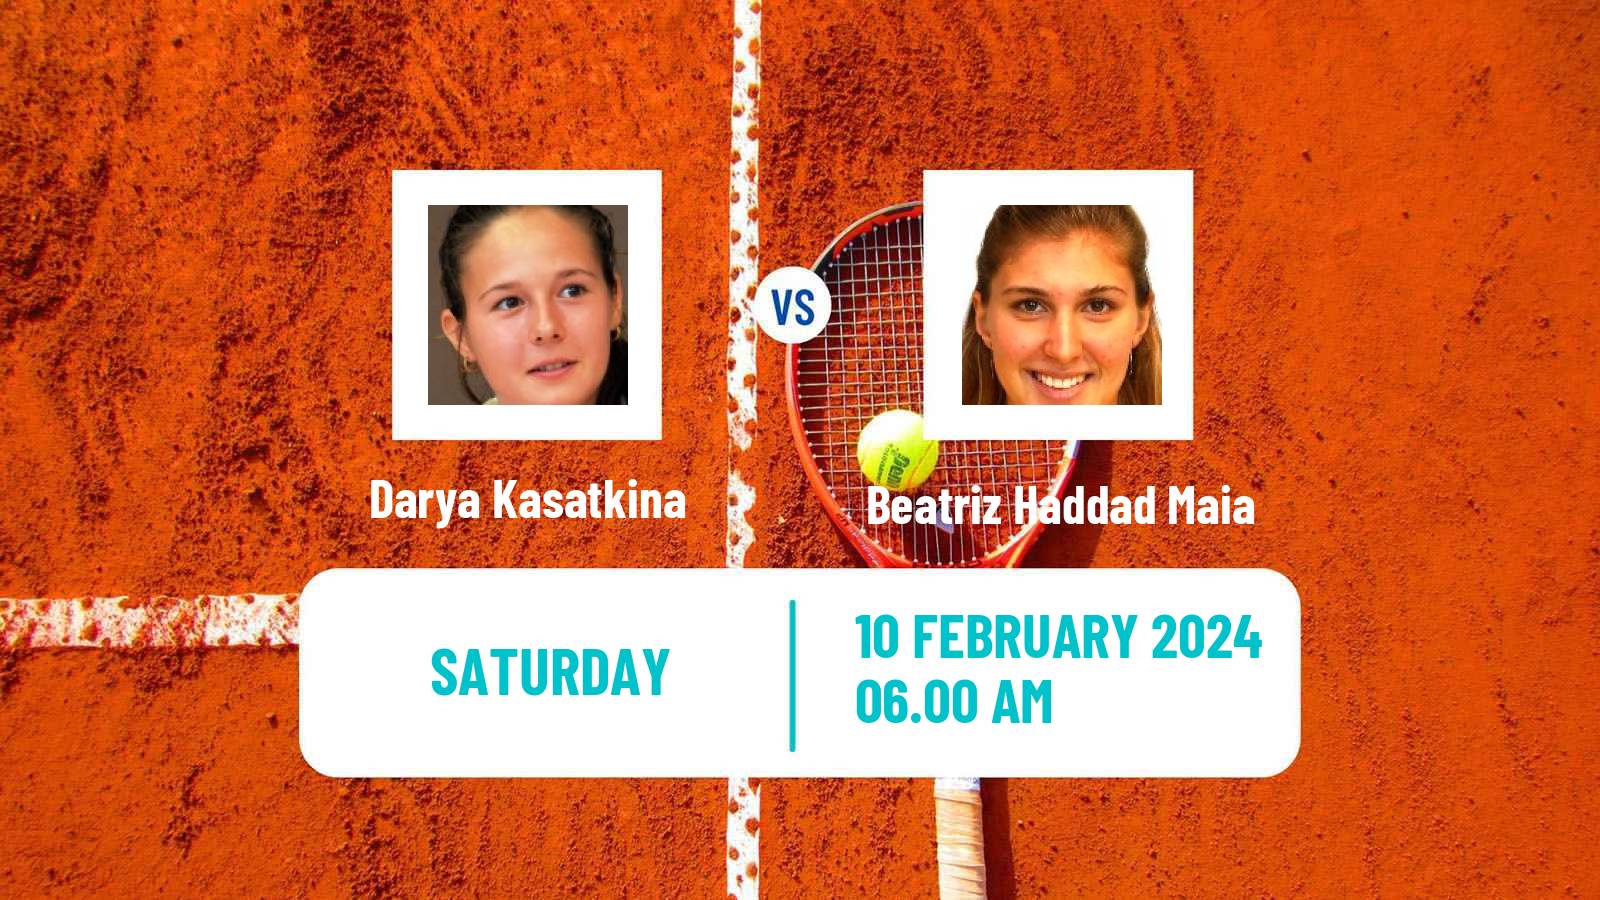 Tennis WTA Abu Dhabi Darya Kasatkina - Beatriz Haddad Maia